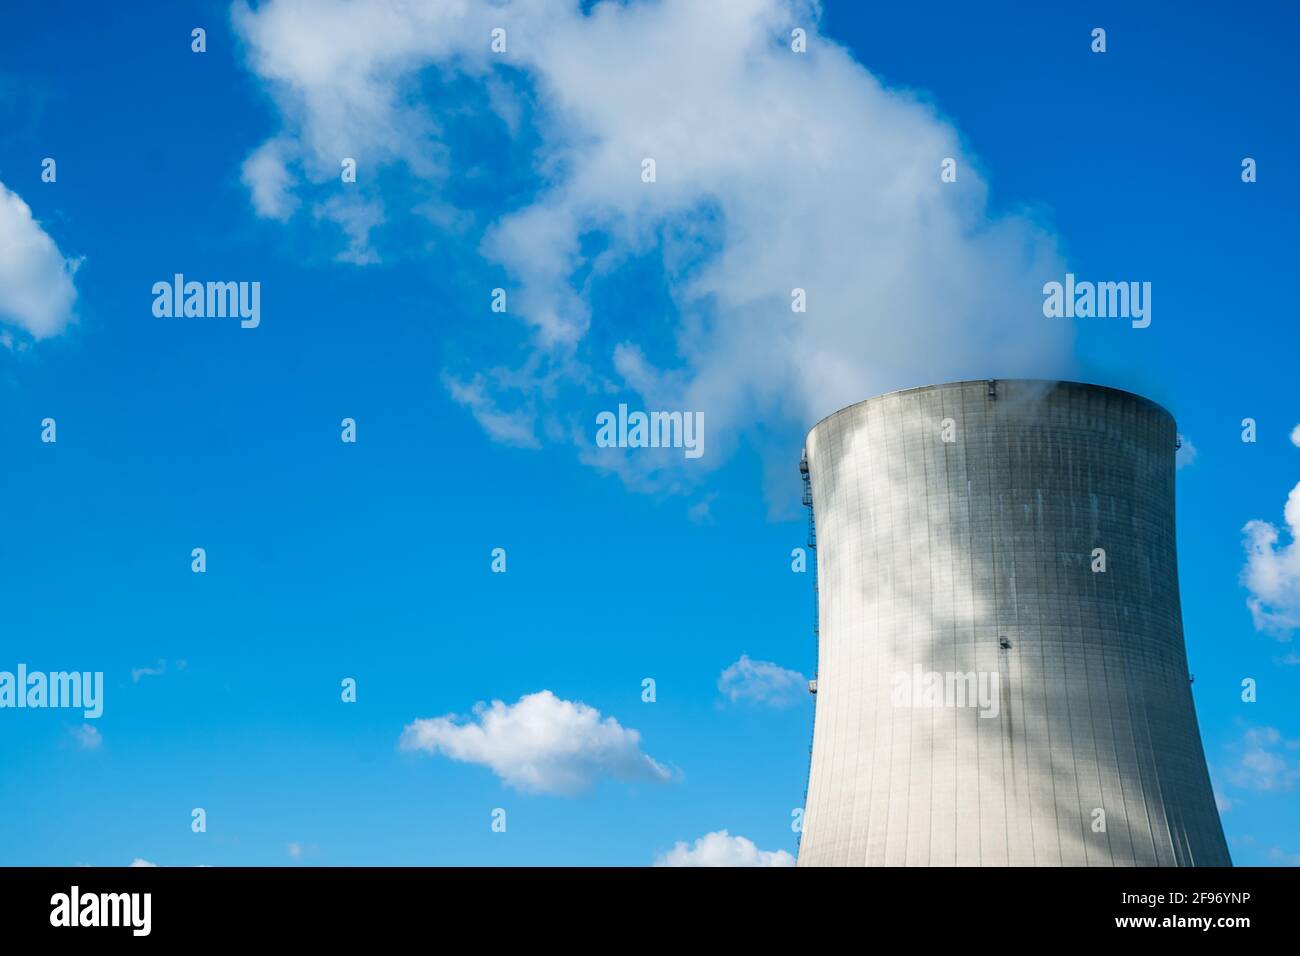 Nahaufnahme des berühmten Kernkraftwerks Gösgen (Kernkraftwerk Gösgen) in Gösgen-Däniken, Schweiz. Es handelt sich um einen Druckwasserreaktor. Stockfoto